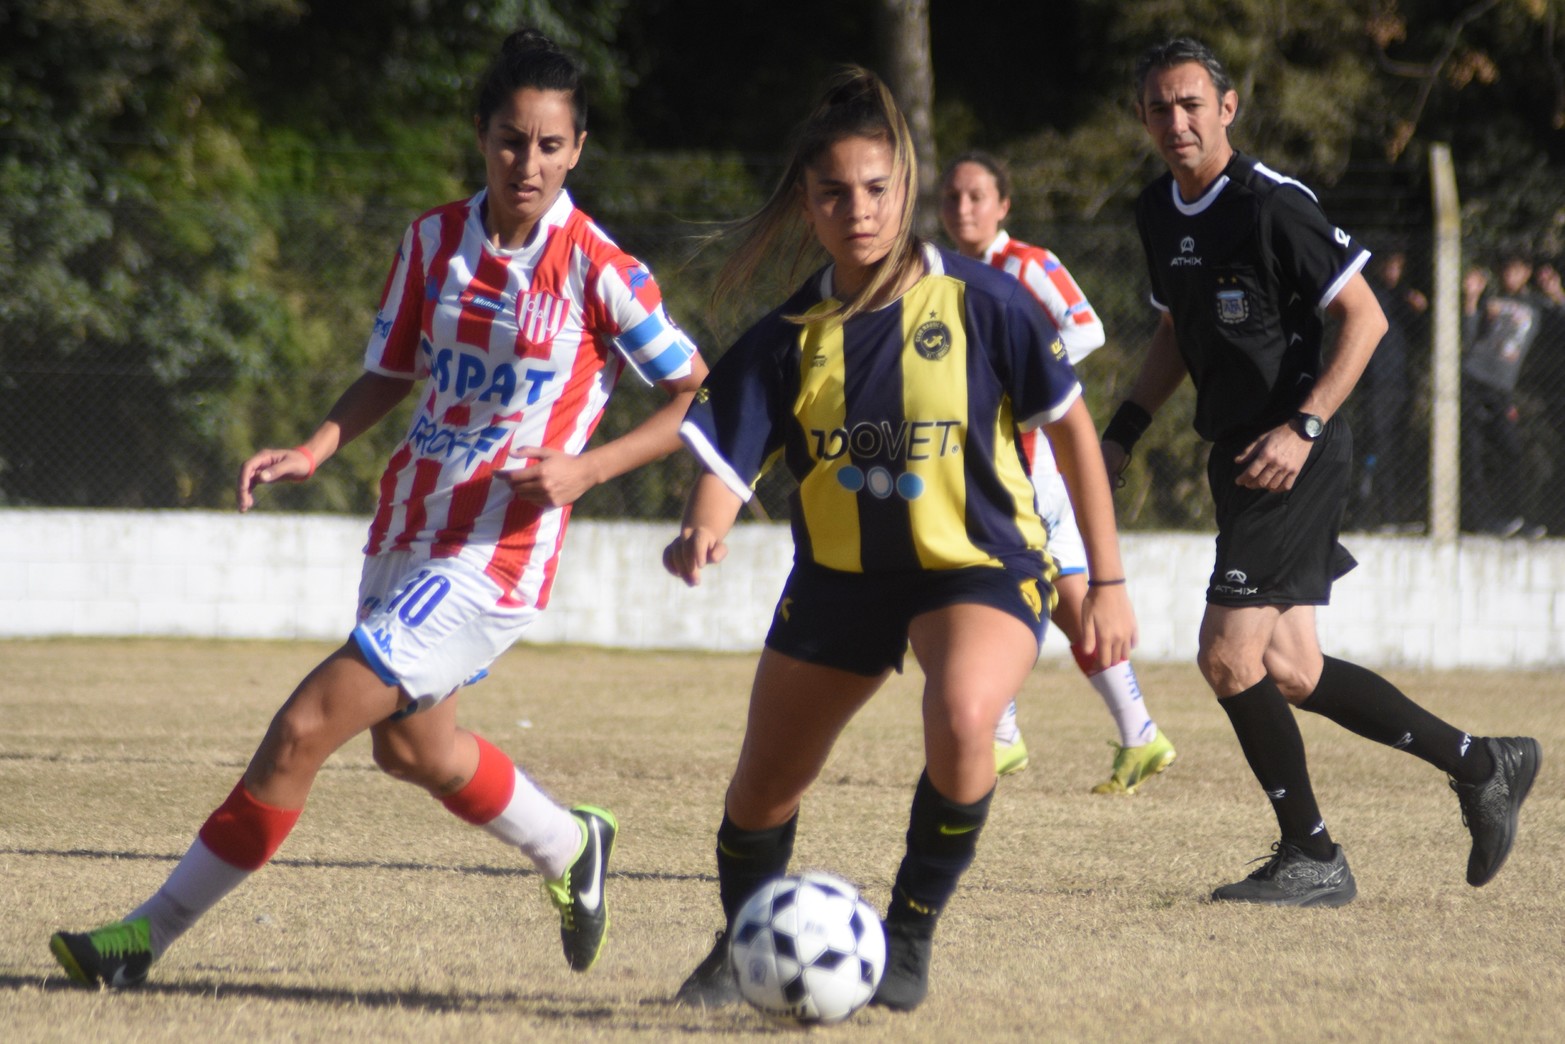 Unión le ganó 4 a 1 a El Quilla en la rama femenina de fútbol.  Representará la liga santafesina en la Copa Santa Fe